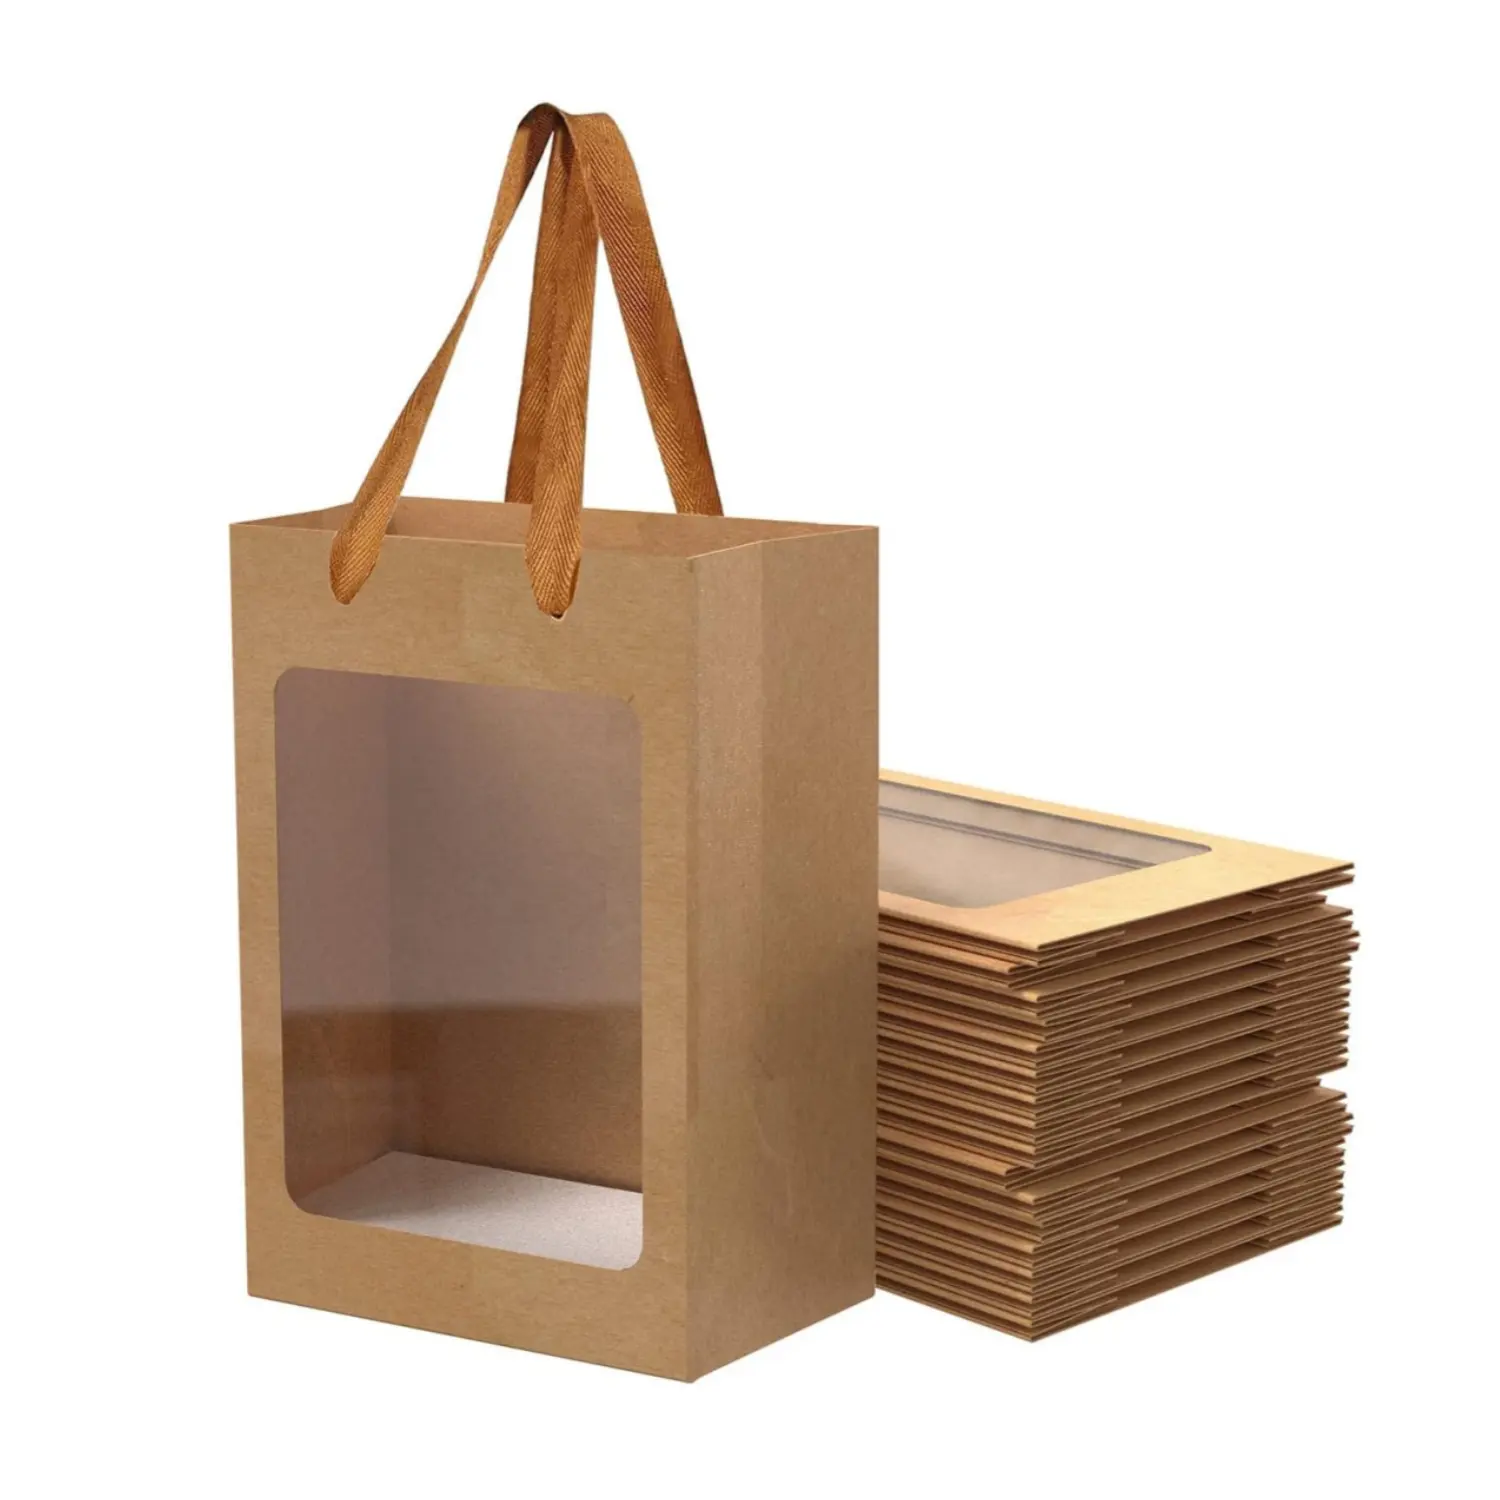 हॉलिडे पार्टी शॉपिंग के लिए उपयुक्त पारदर्शी खिड़की के साथ अनुकूलन योग्य उपहार बैग, हैंडल के साथ चमड़े का पेपर बैग